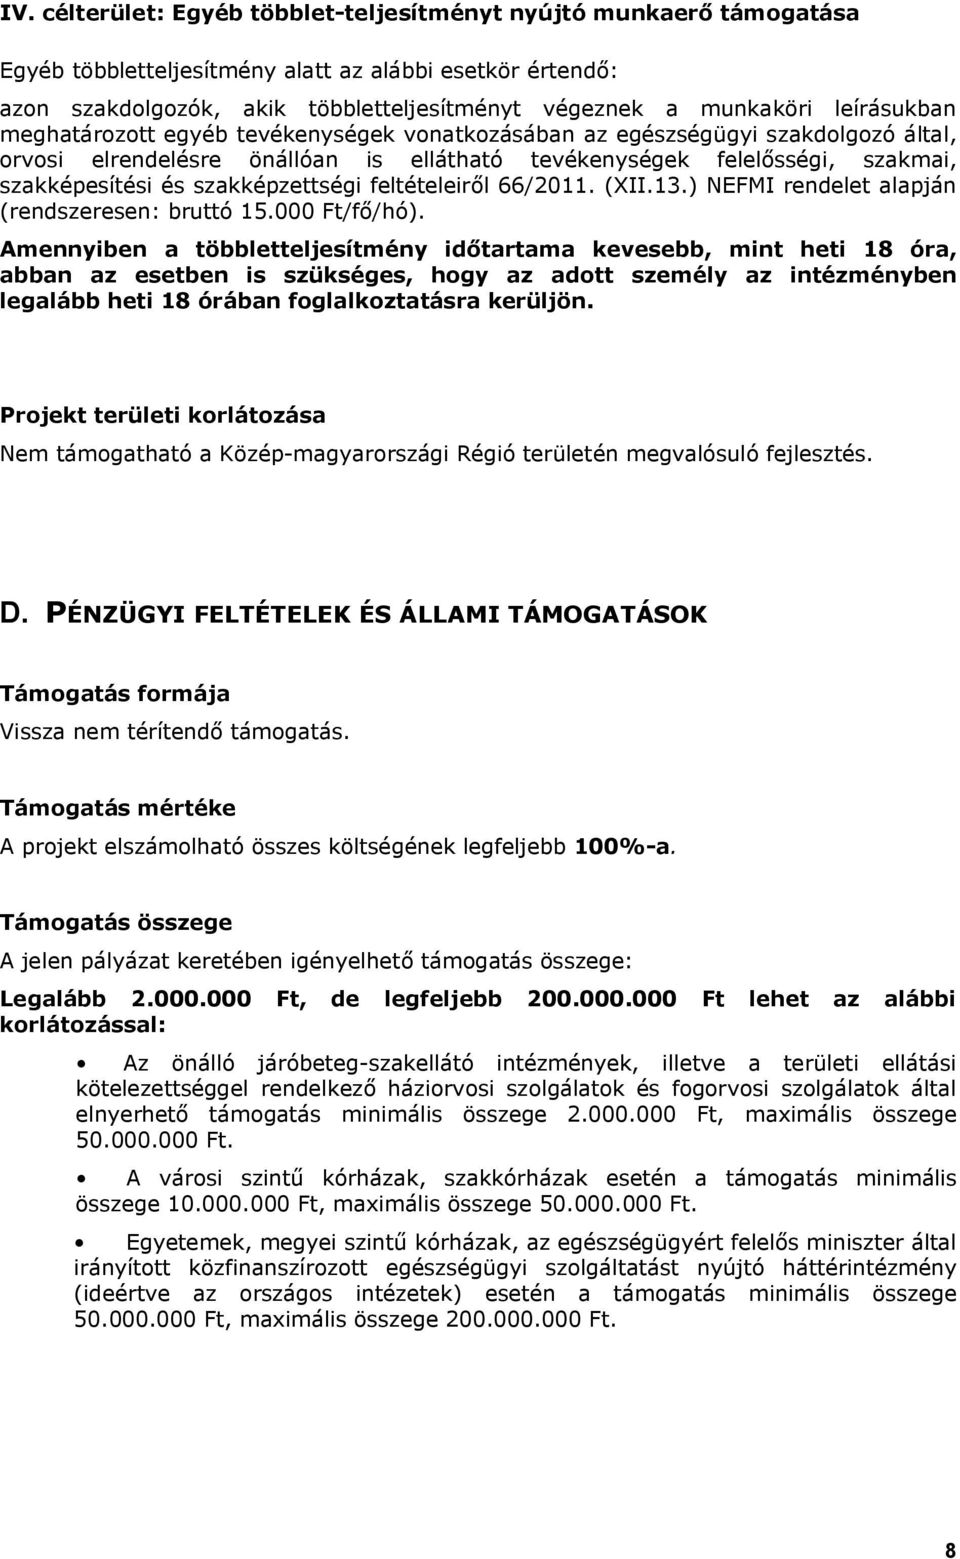 szakképzettségi feltételeiről 66/2011. (XII.13.) NEFMI rendelet alapján (rendszeresen: bruttó 15.000 Ft/fő/hó).